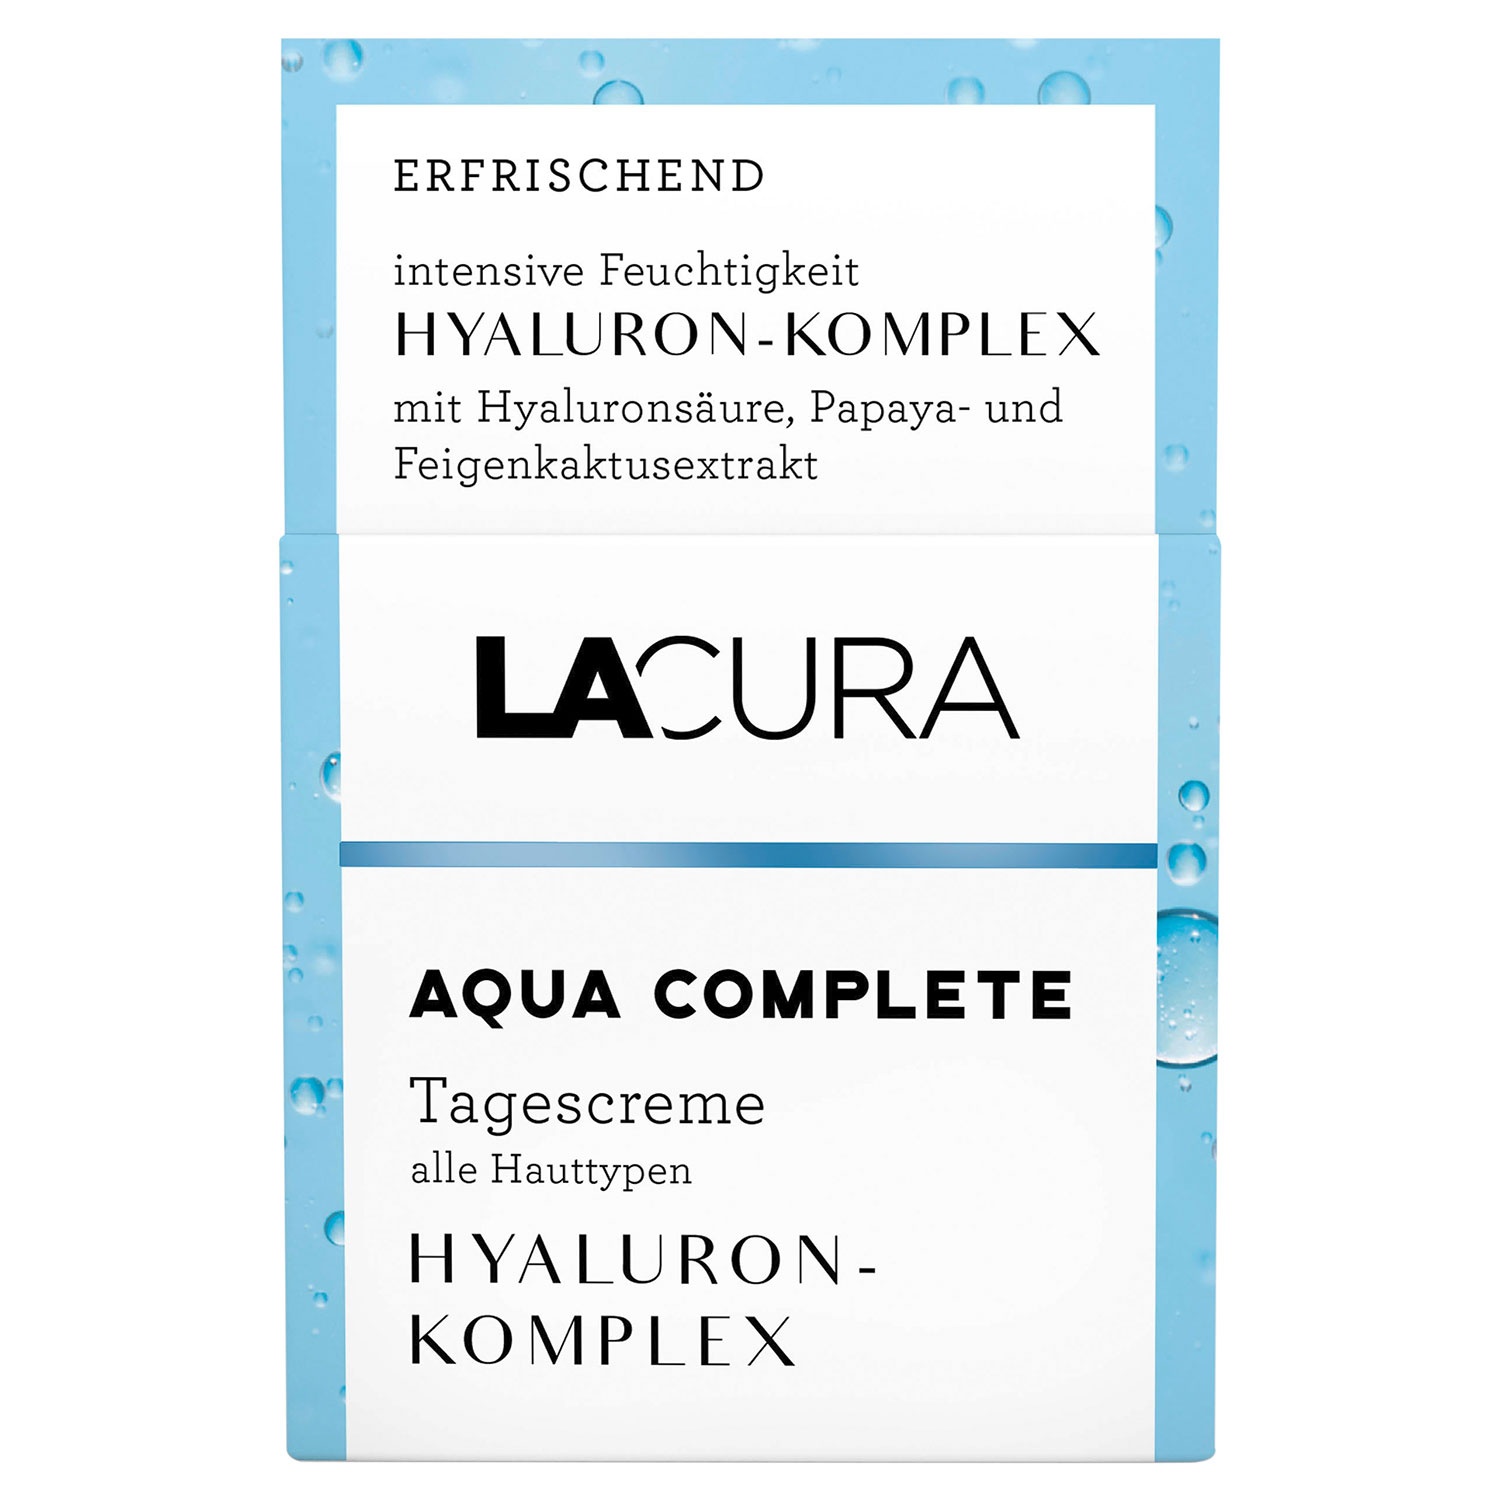 Lacura gesichtscreme - Unsere Auswahl unter der Vielzahl an verglichenenLacura gesichtscreme!